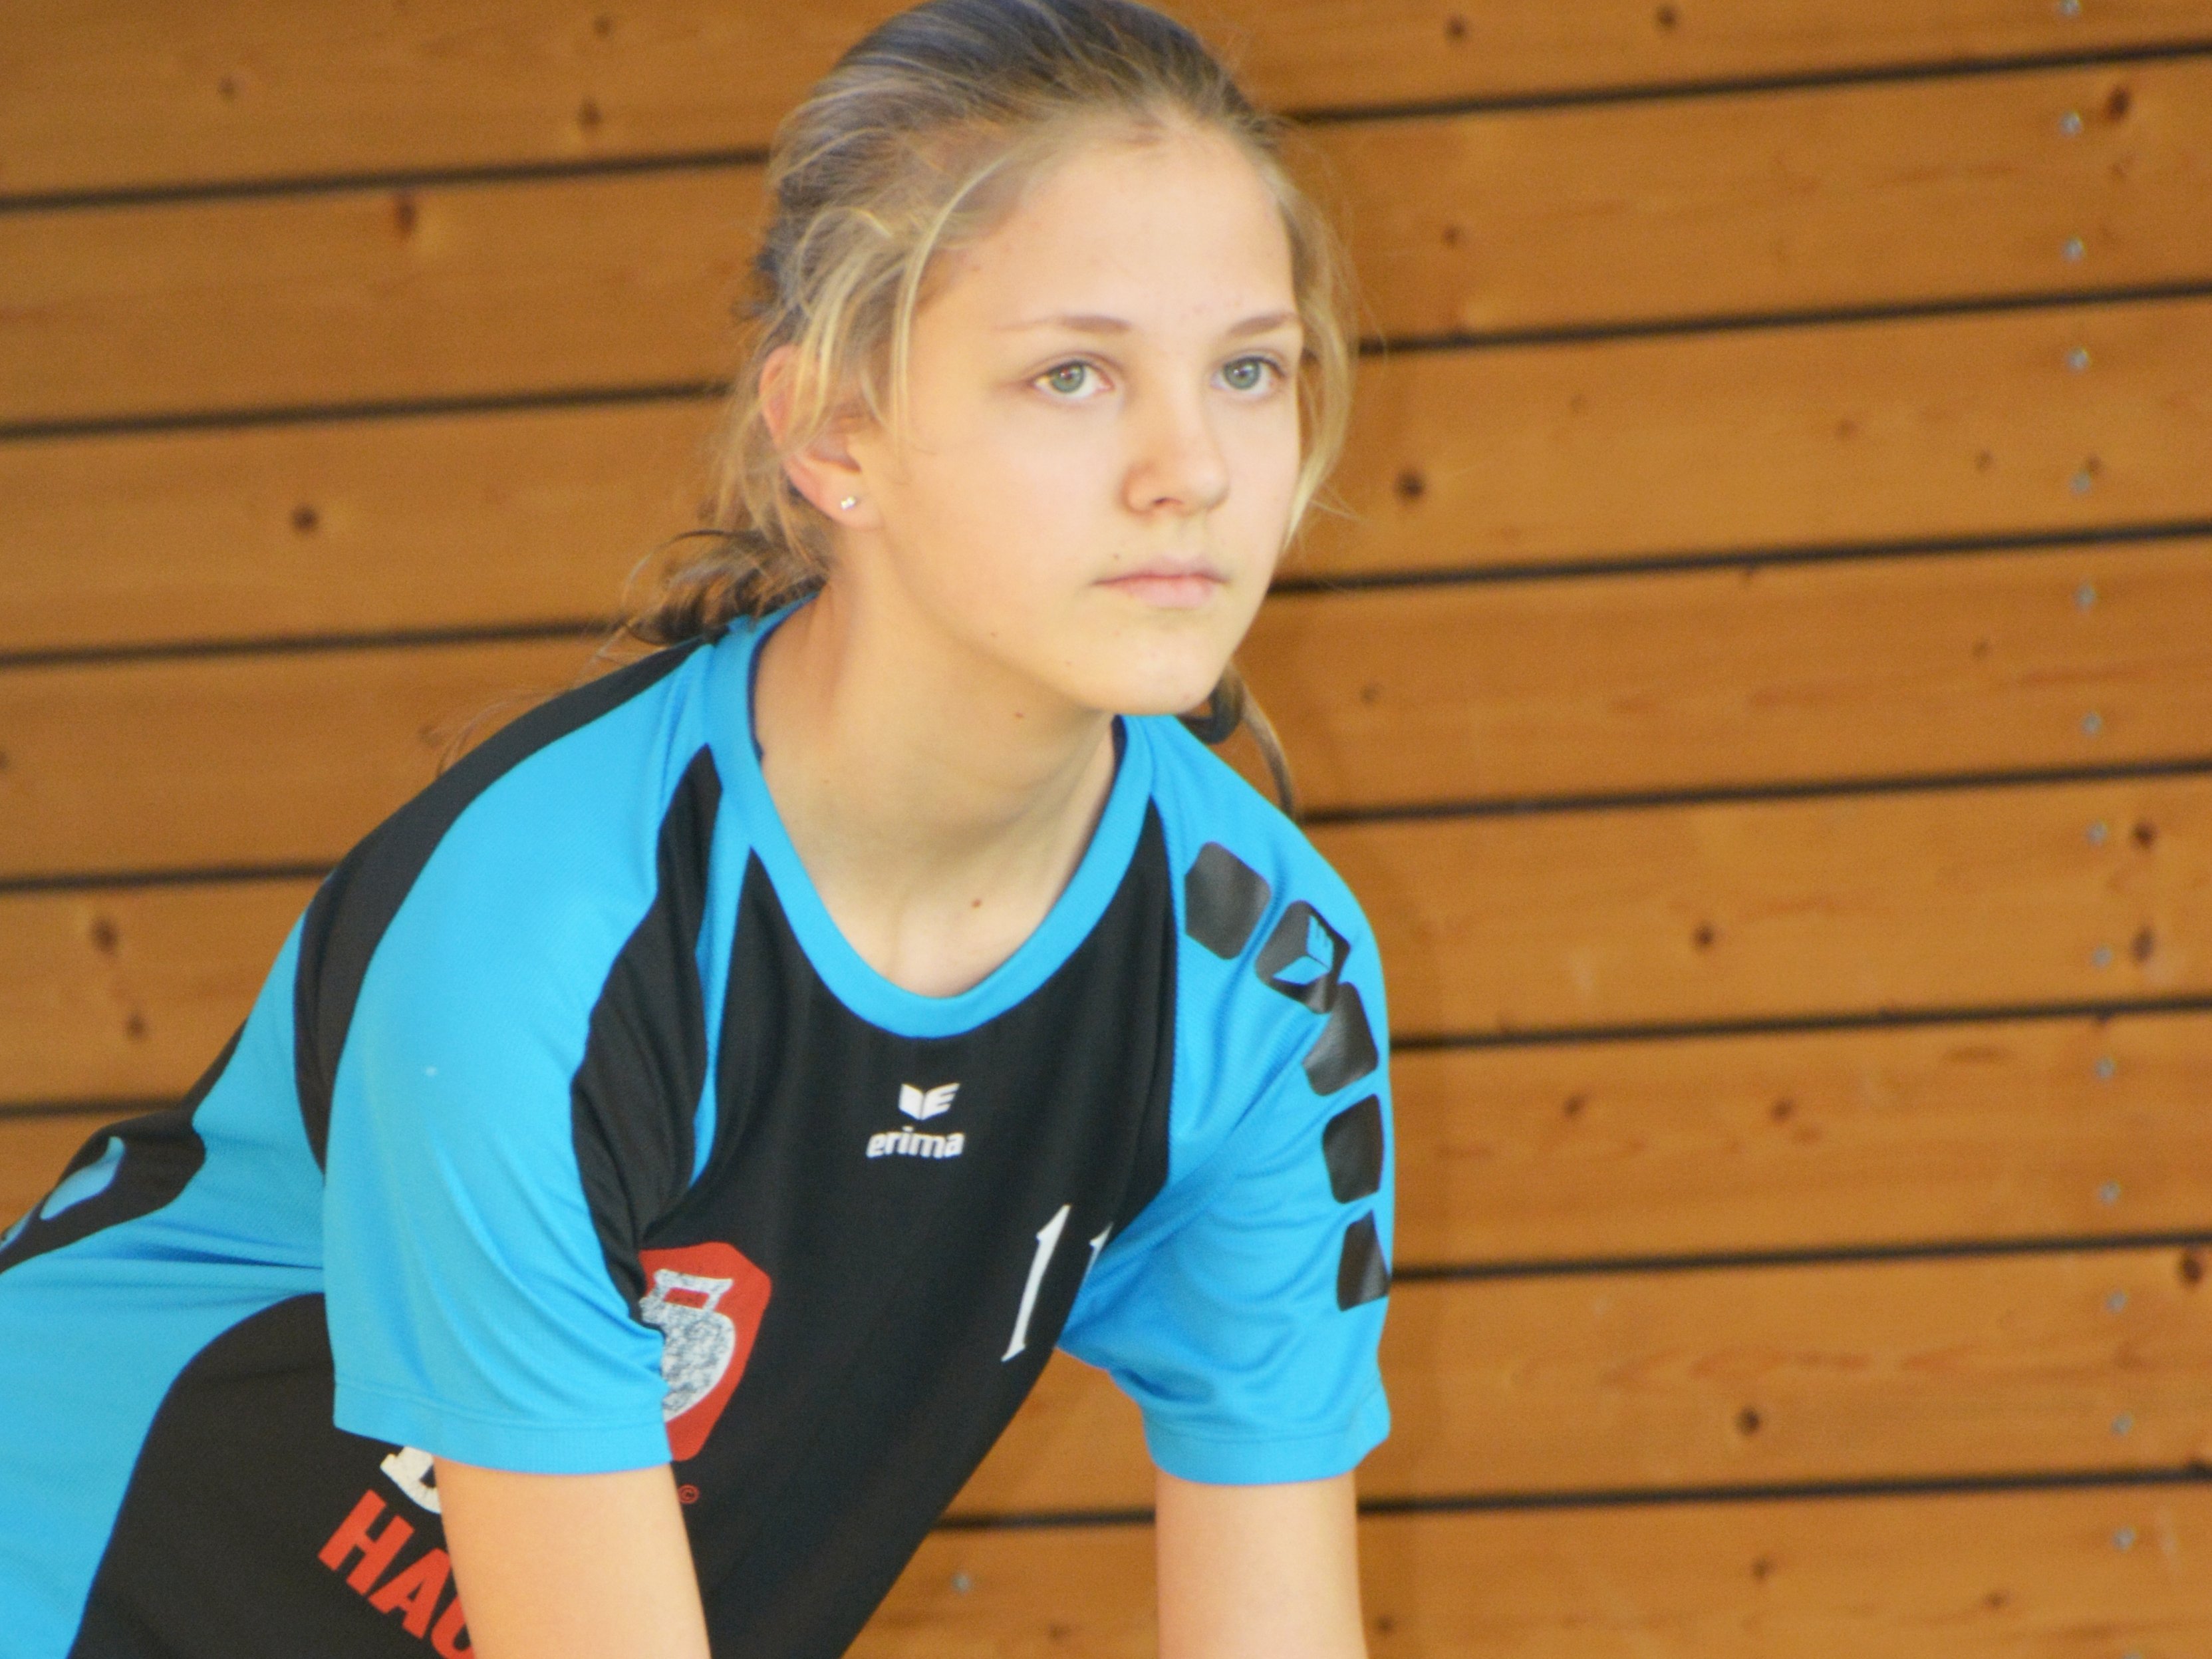  Jugend trainiert für Olympia - Volleyball 